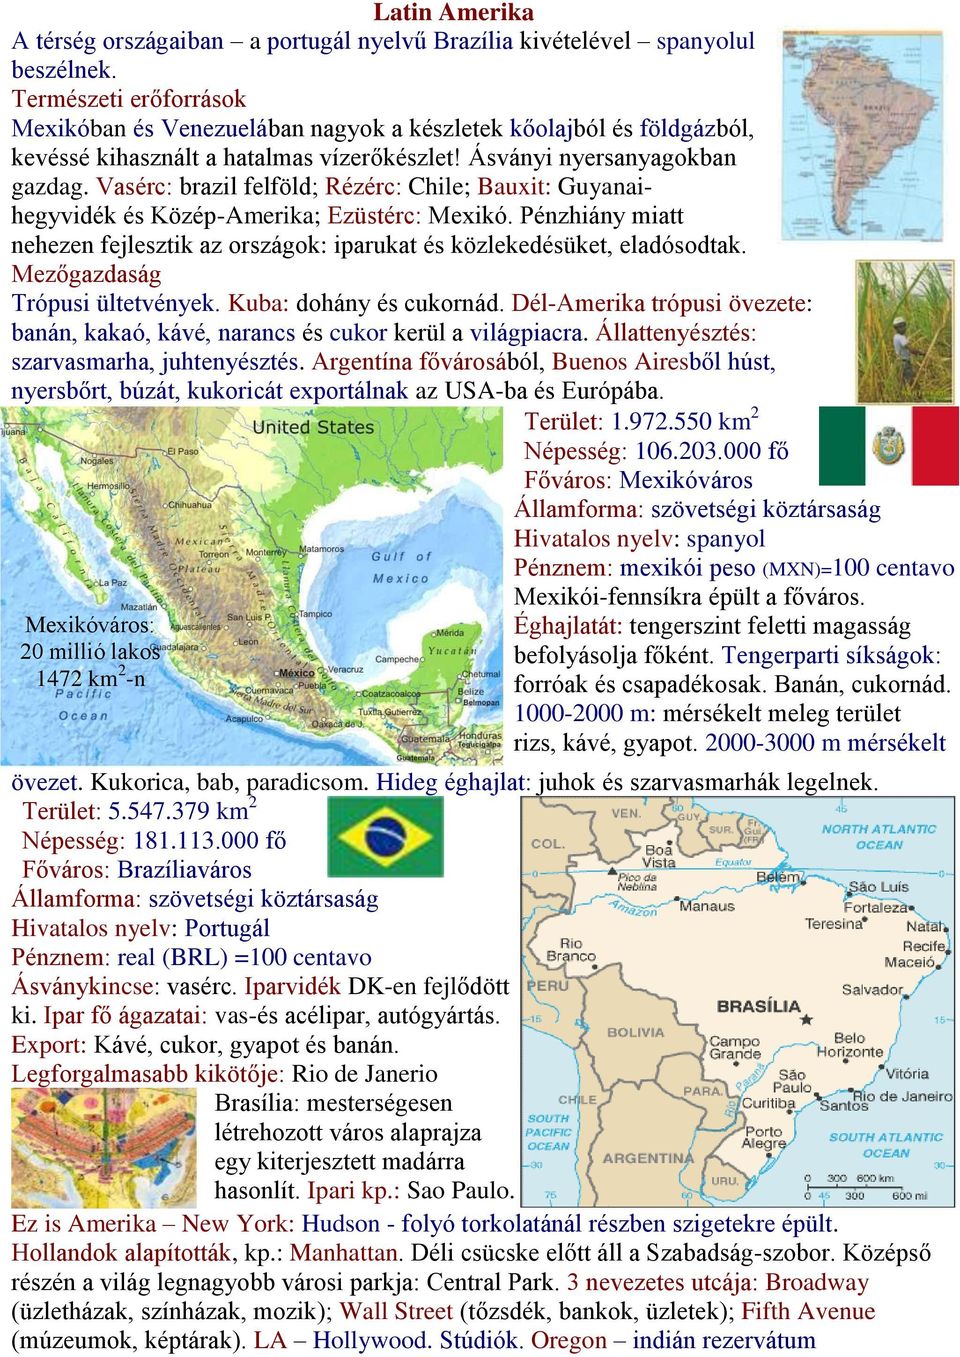 Vasérc: brazil felföld; Rézérc: Chile; Bauxit: Guyanaihegyvidék és Közép-Amerika; Ezüstérc: Mexikó. Pénzhiány miatt nehezen fejlesztik az országok: iparukat és közlekedésüket, eladósodtak.